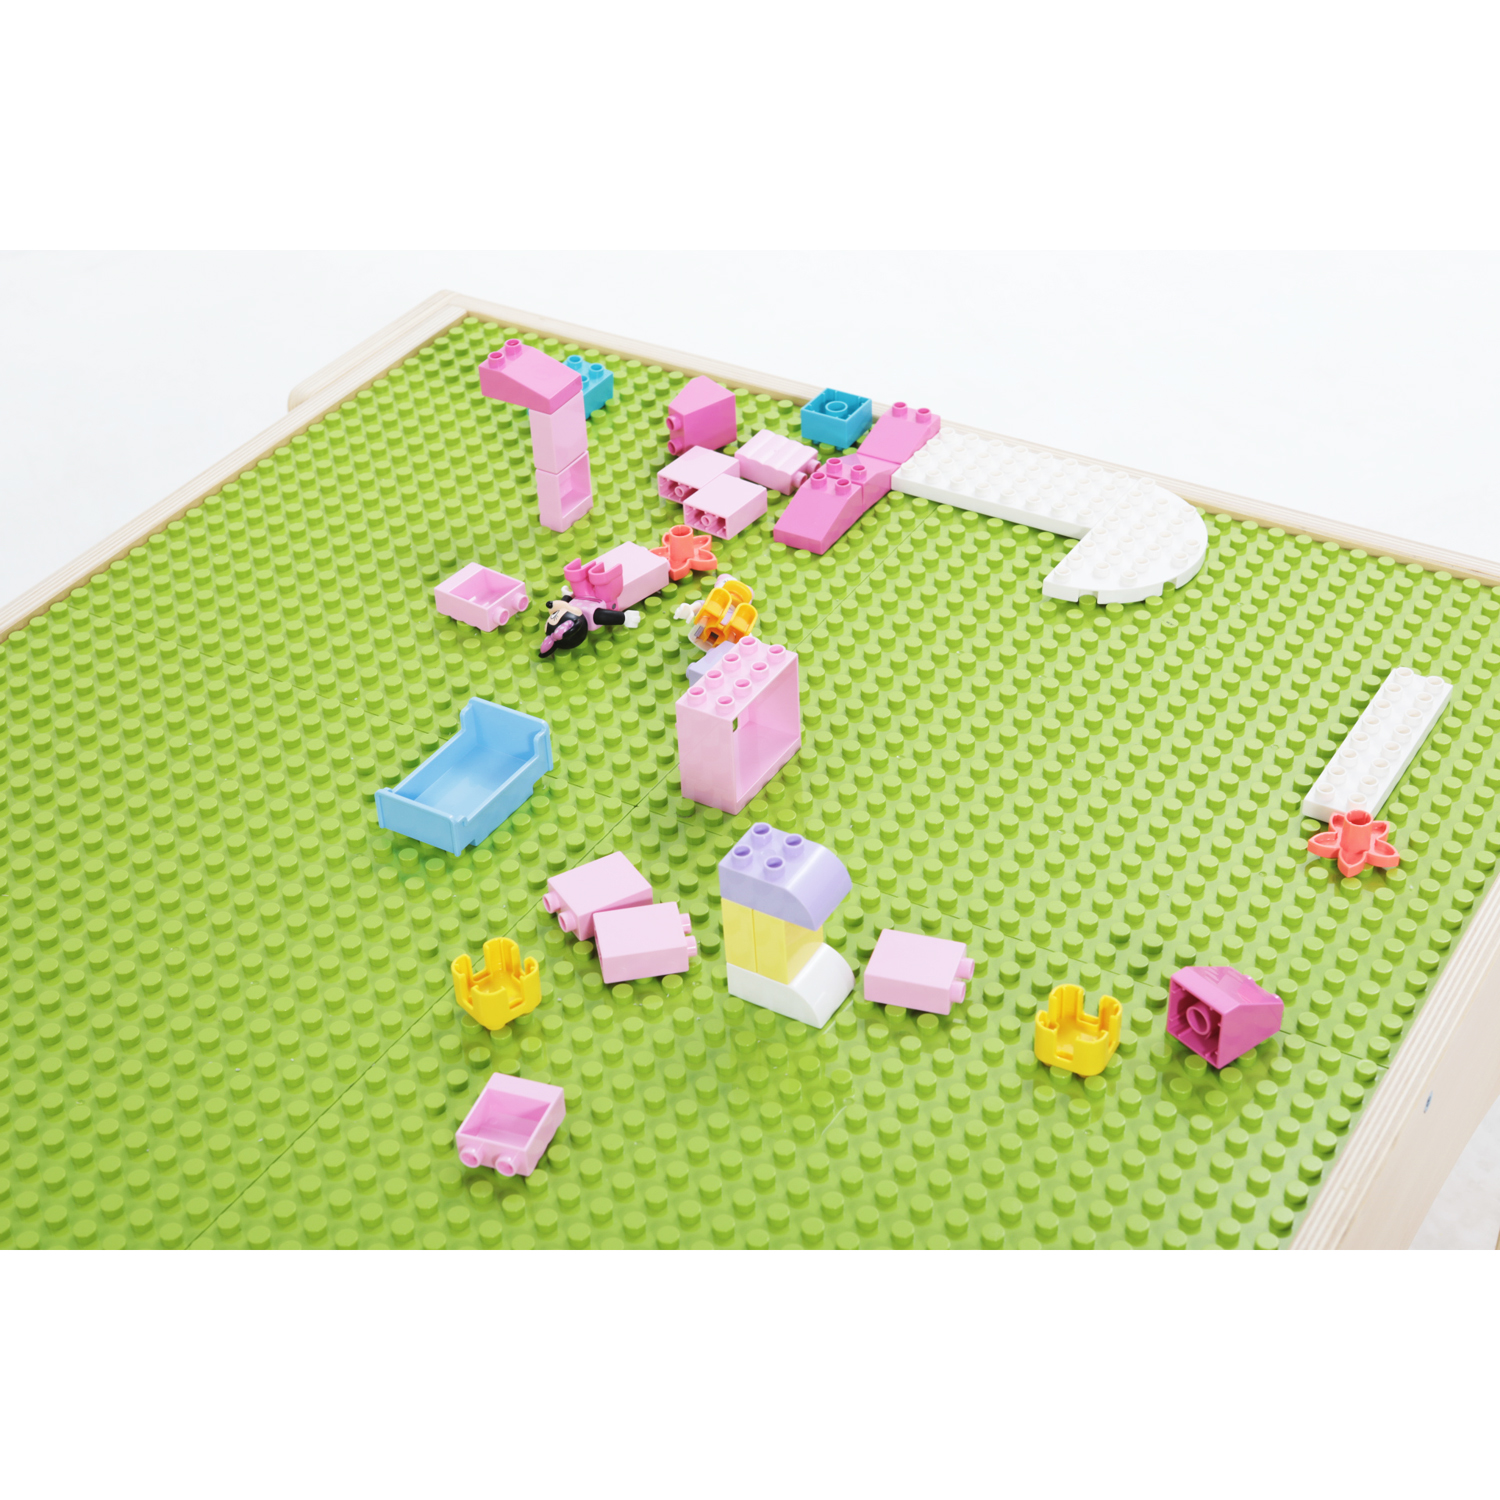 Lekbord för byggklossar, LEGO-kompatibelt